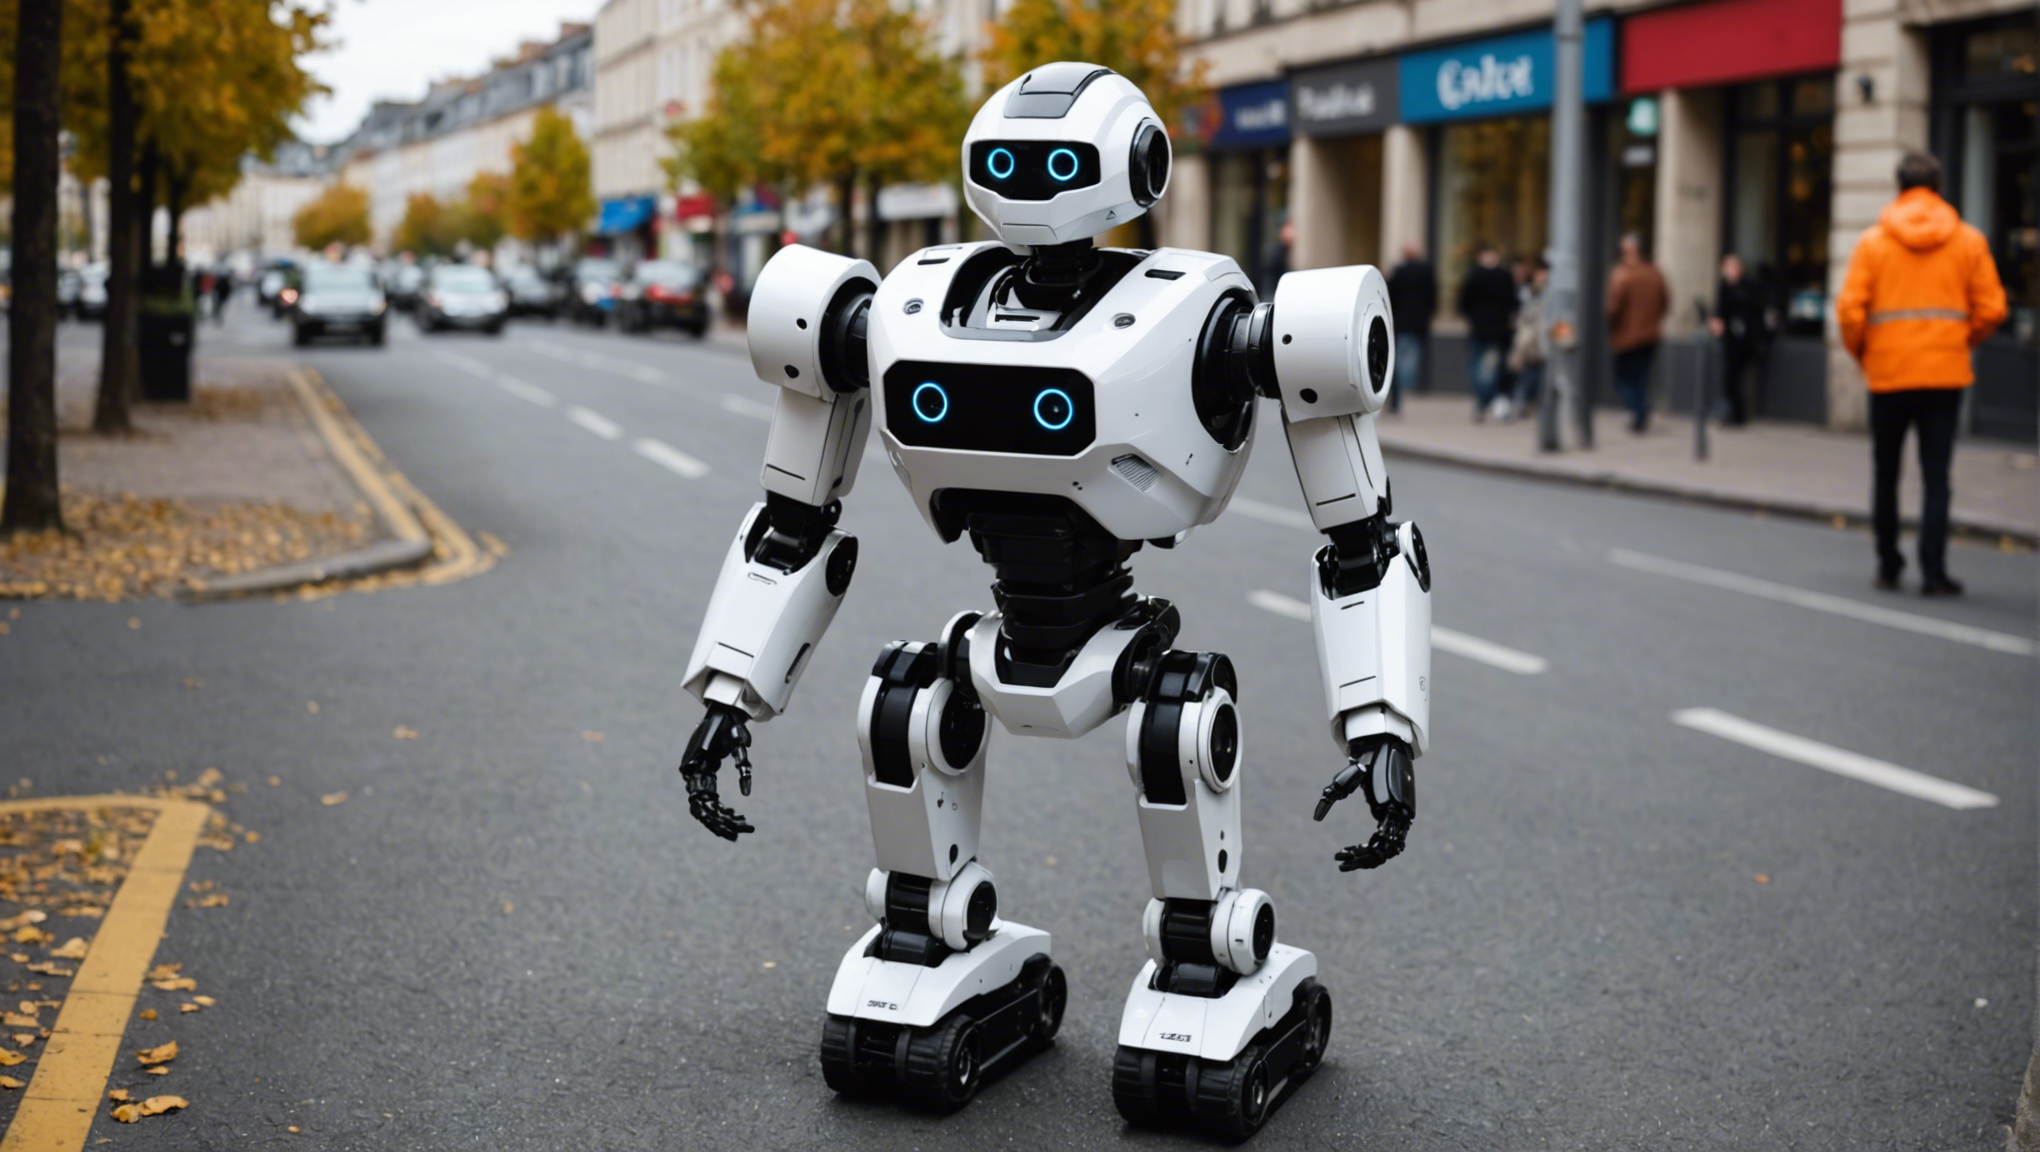 louez un robot à créteil pour tous vos projets avec une large sélection de robots disponibles pour répondre à vos besoins.